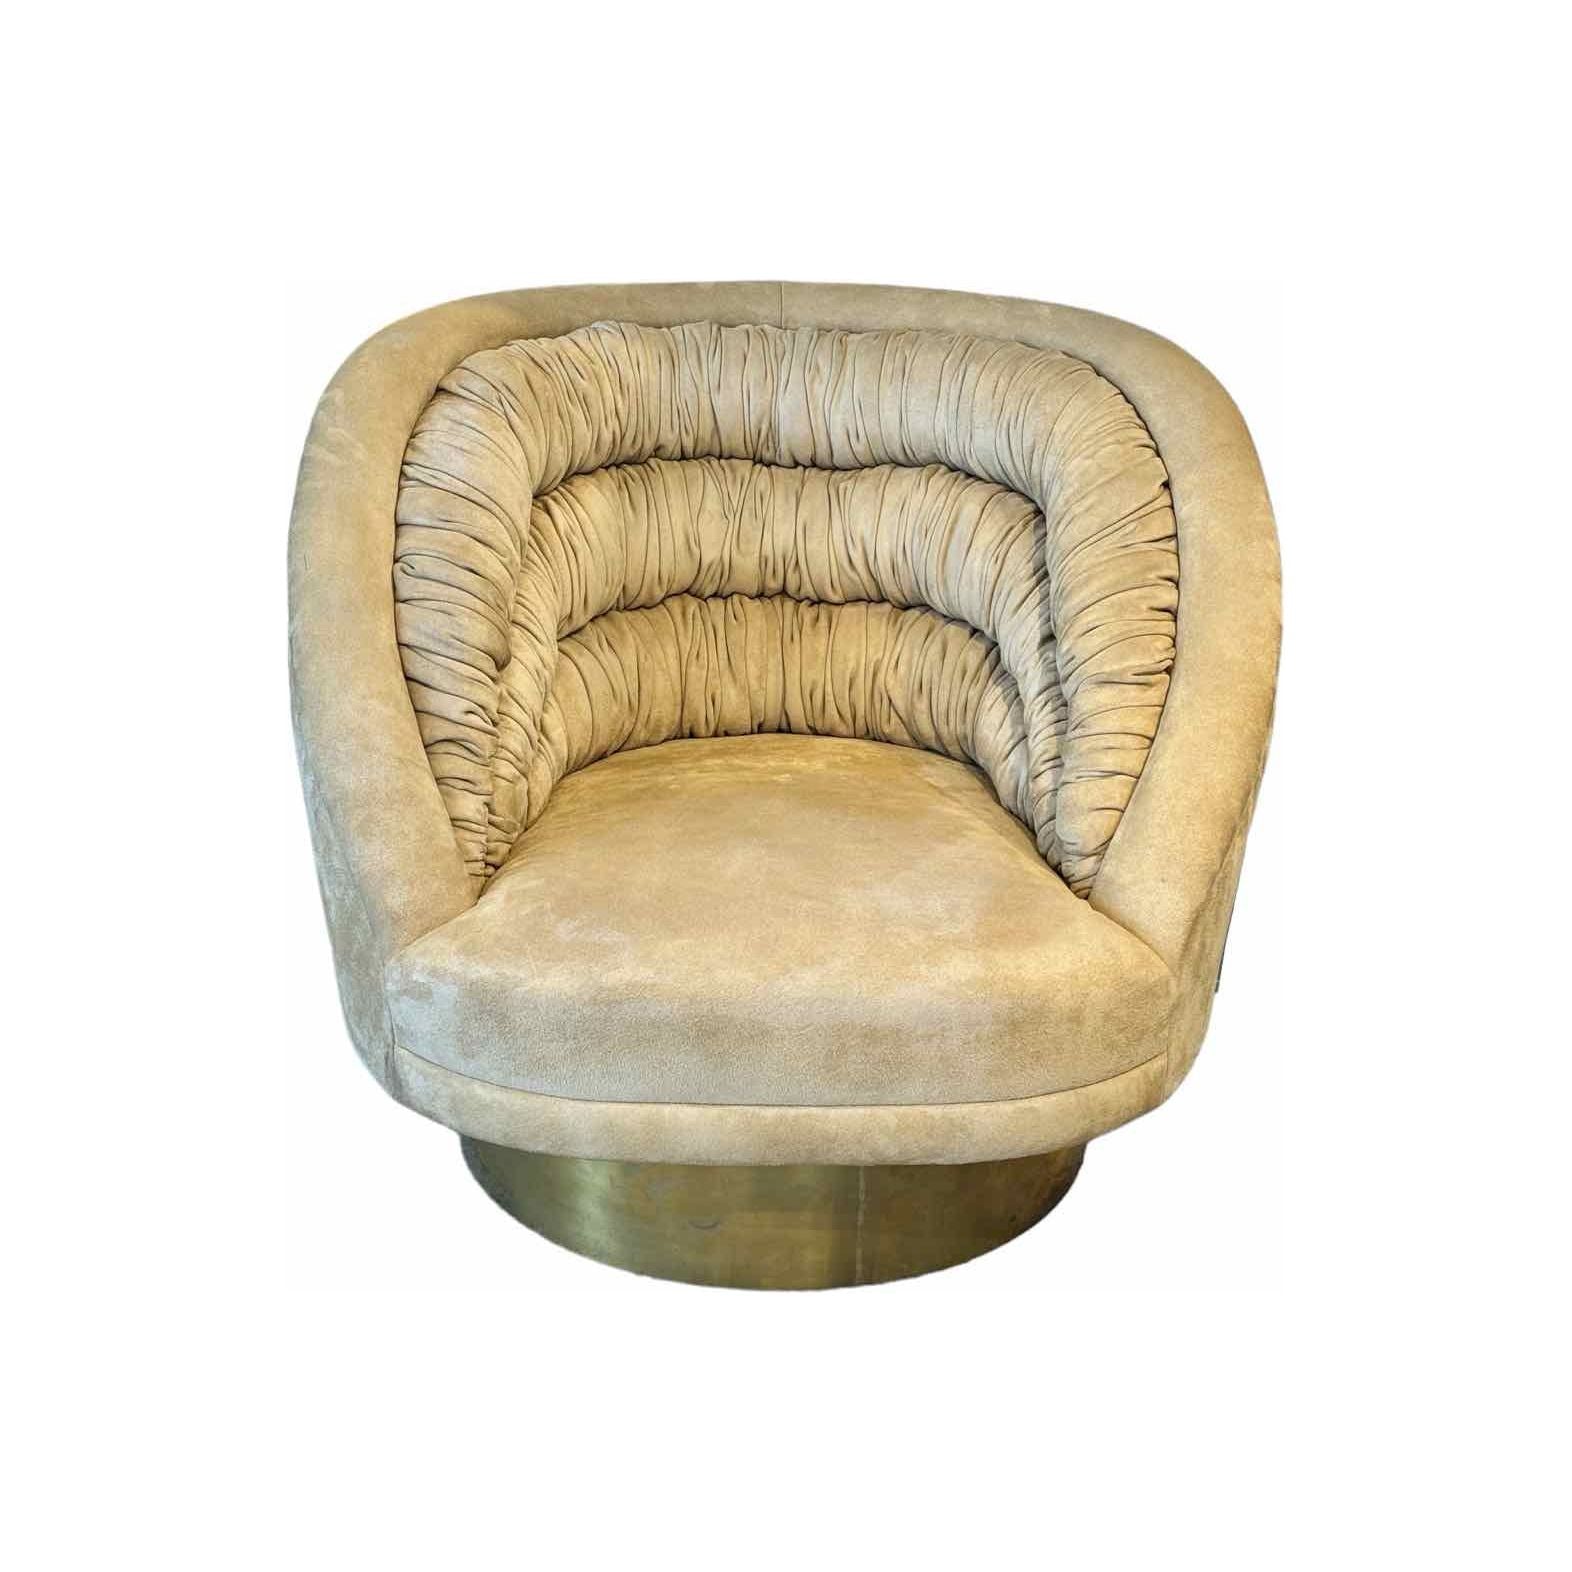 Design Vladimir Kagan 1976 Ellipse Lounge Chair in Suede - 60"W x 32"D x 29"H